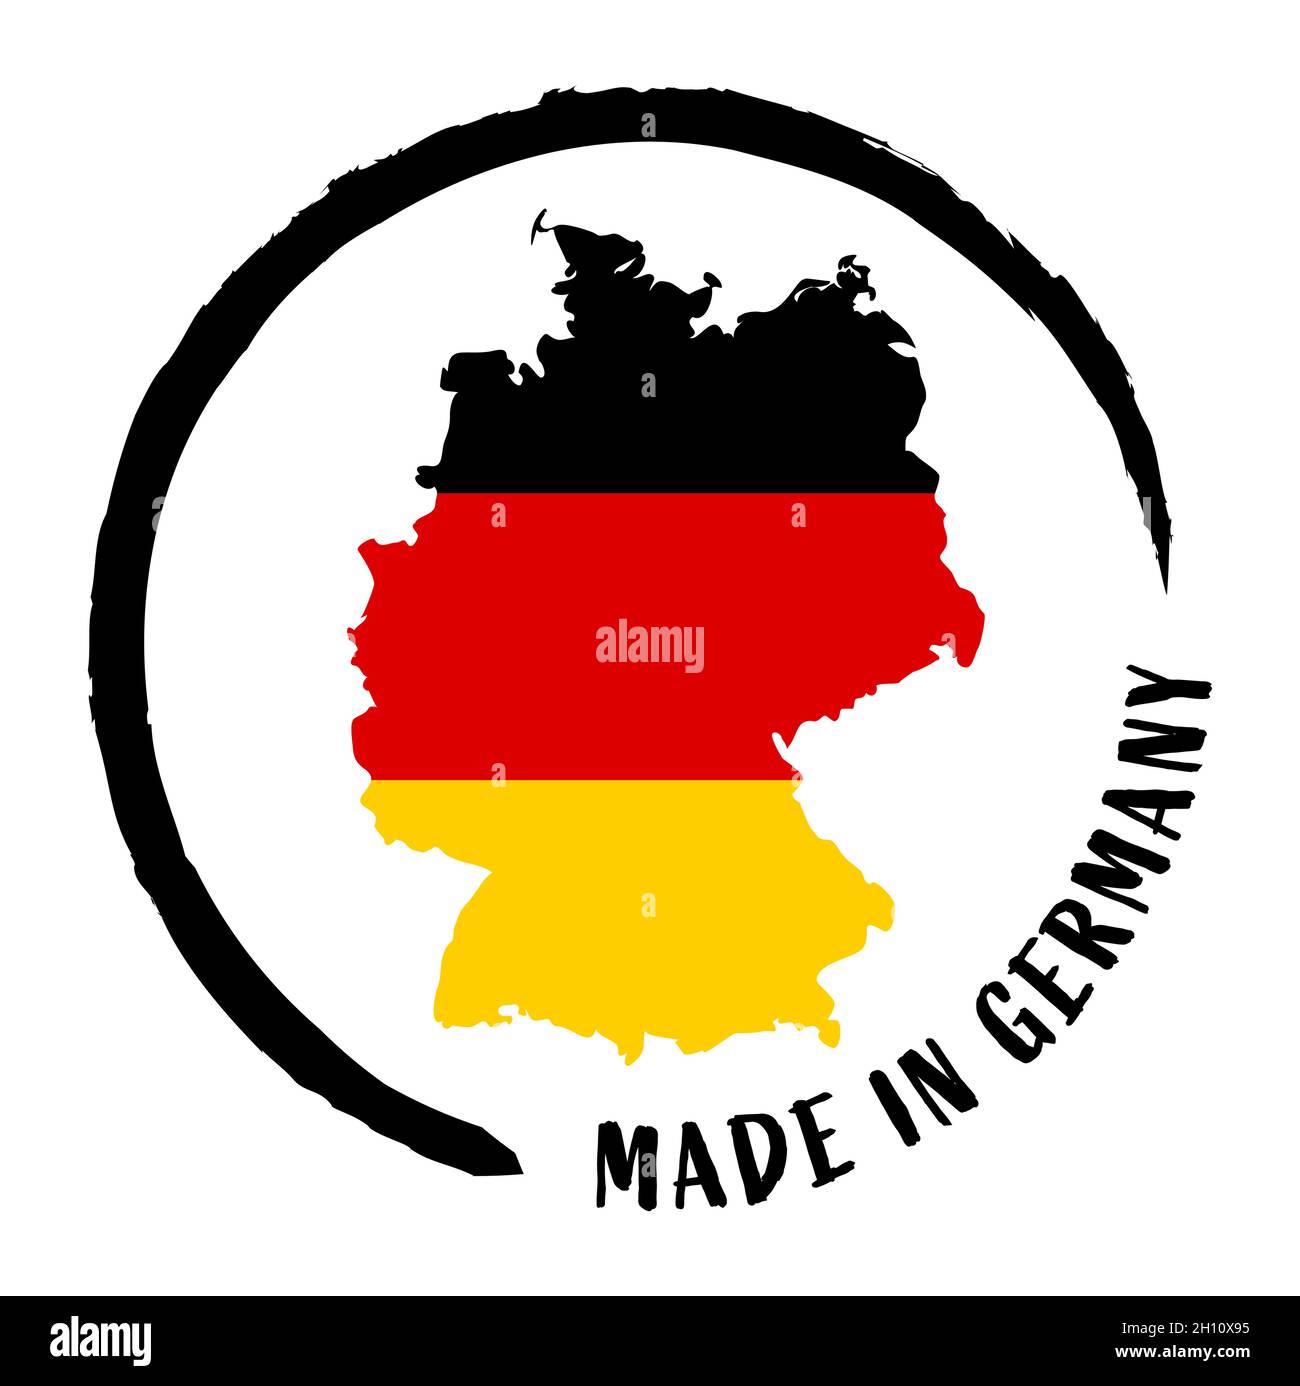 eps-Vektordatei mit Business-Stempel, runder Patch 'Made in Germany' mit Silhouette von deutschland und nationalen Farben Stock Vektor